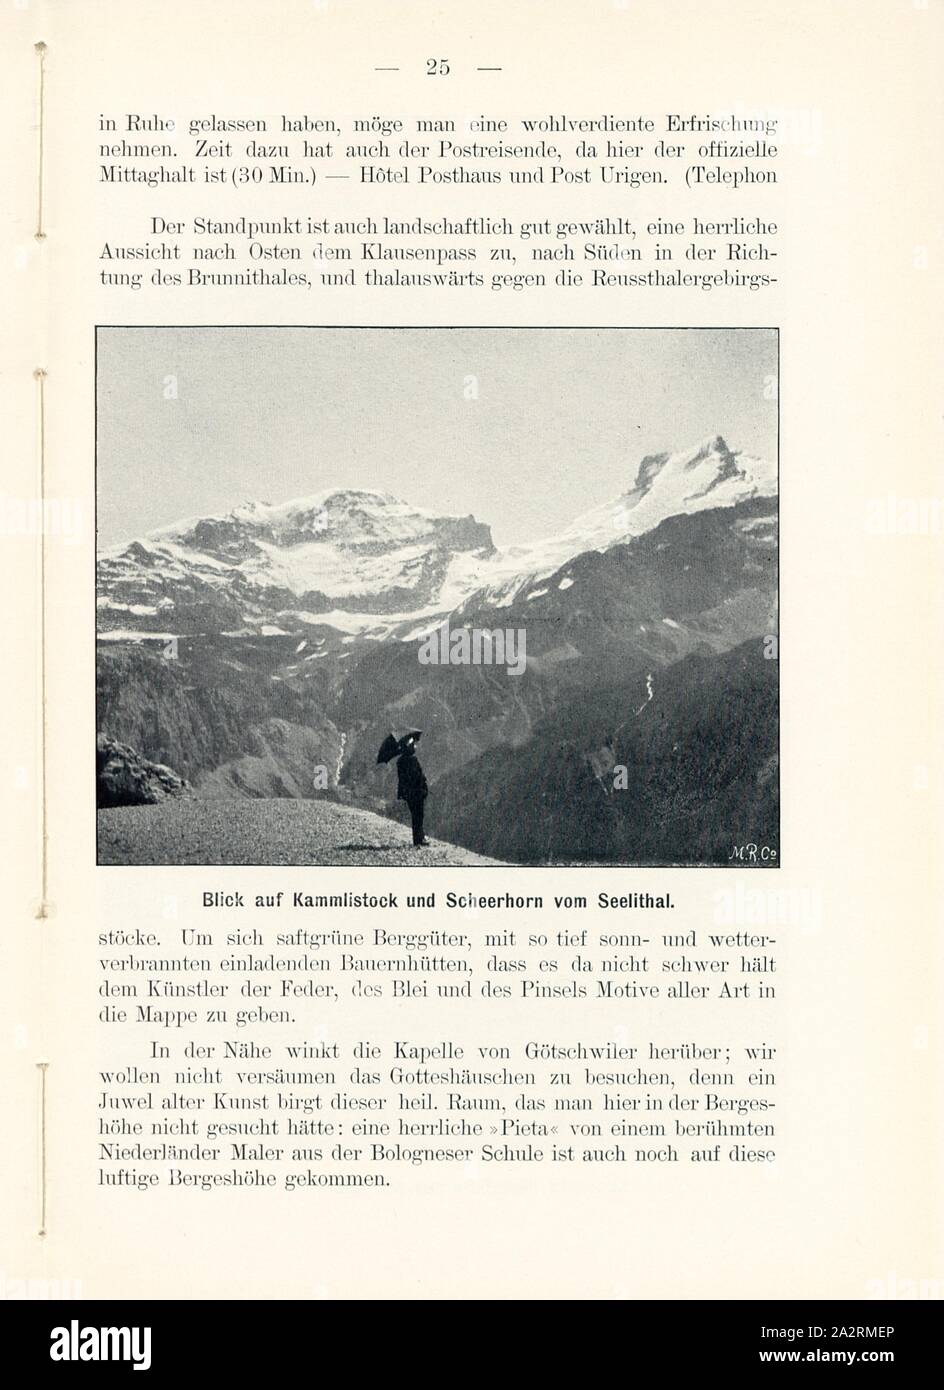 View of Kammlistock and Scheerhorn from Seelithal, Seelithal on Klausenstrasse, Signed: M.R.C, Fig. 24, p. 25, Meisenbach, Riffarth und Co. (imp.), 1900, J. Knobel: Illustrierter Reisebegleiter für die Alpenstrasse des Klausen und ihre Zufahrtslinien. Glarus: Buchdruckerei J. Spälti, 1900 Stock Photo